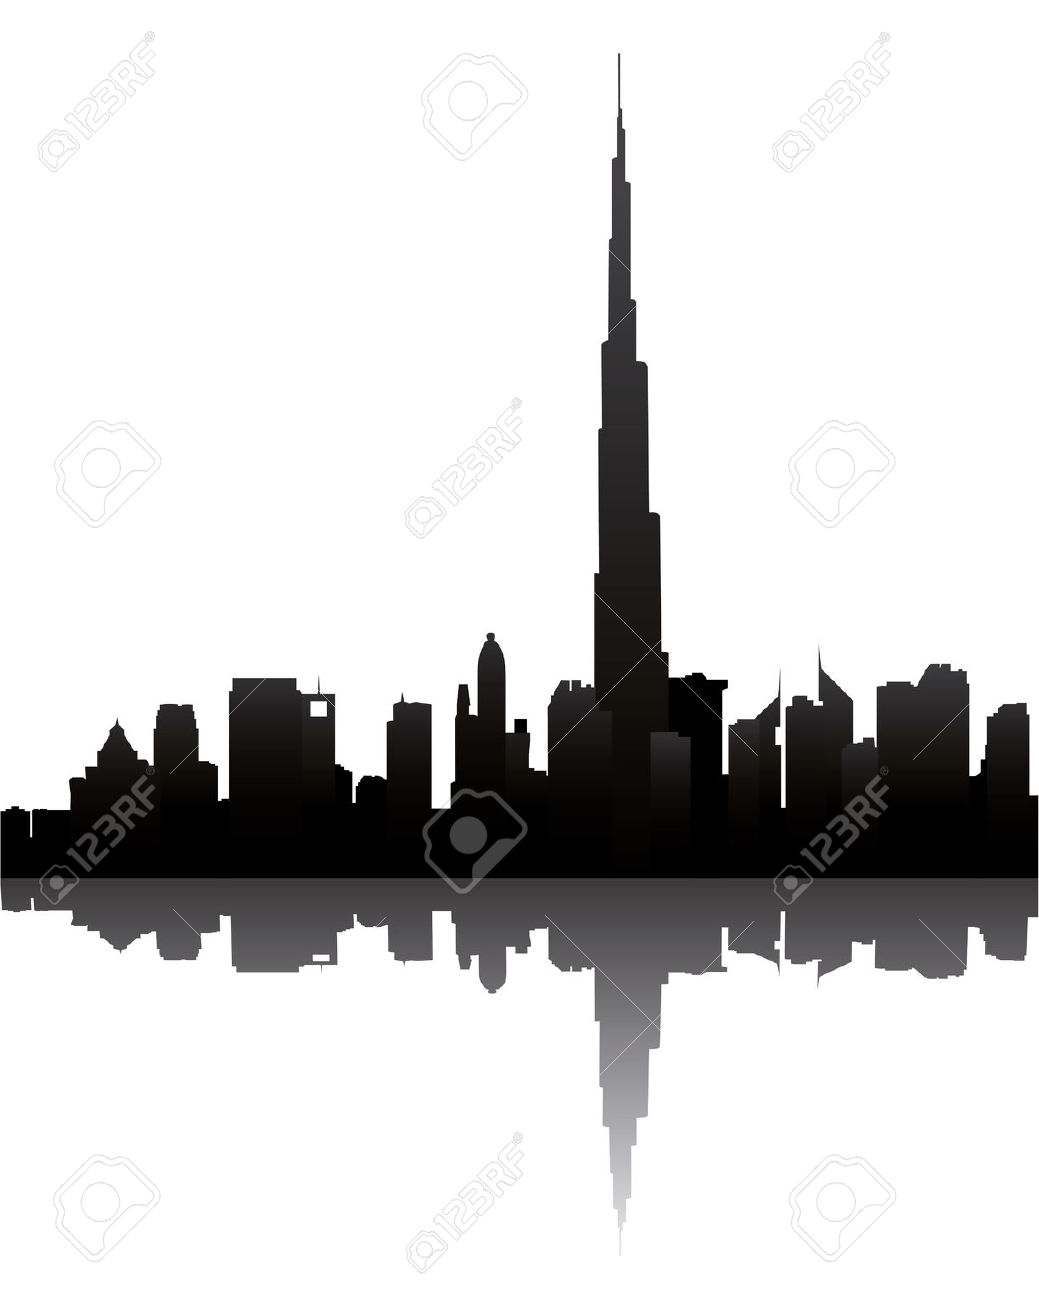 Dubai Skyline With Burj Dubai Royalty Free Cliparts, Vectors, And.